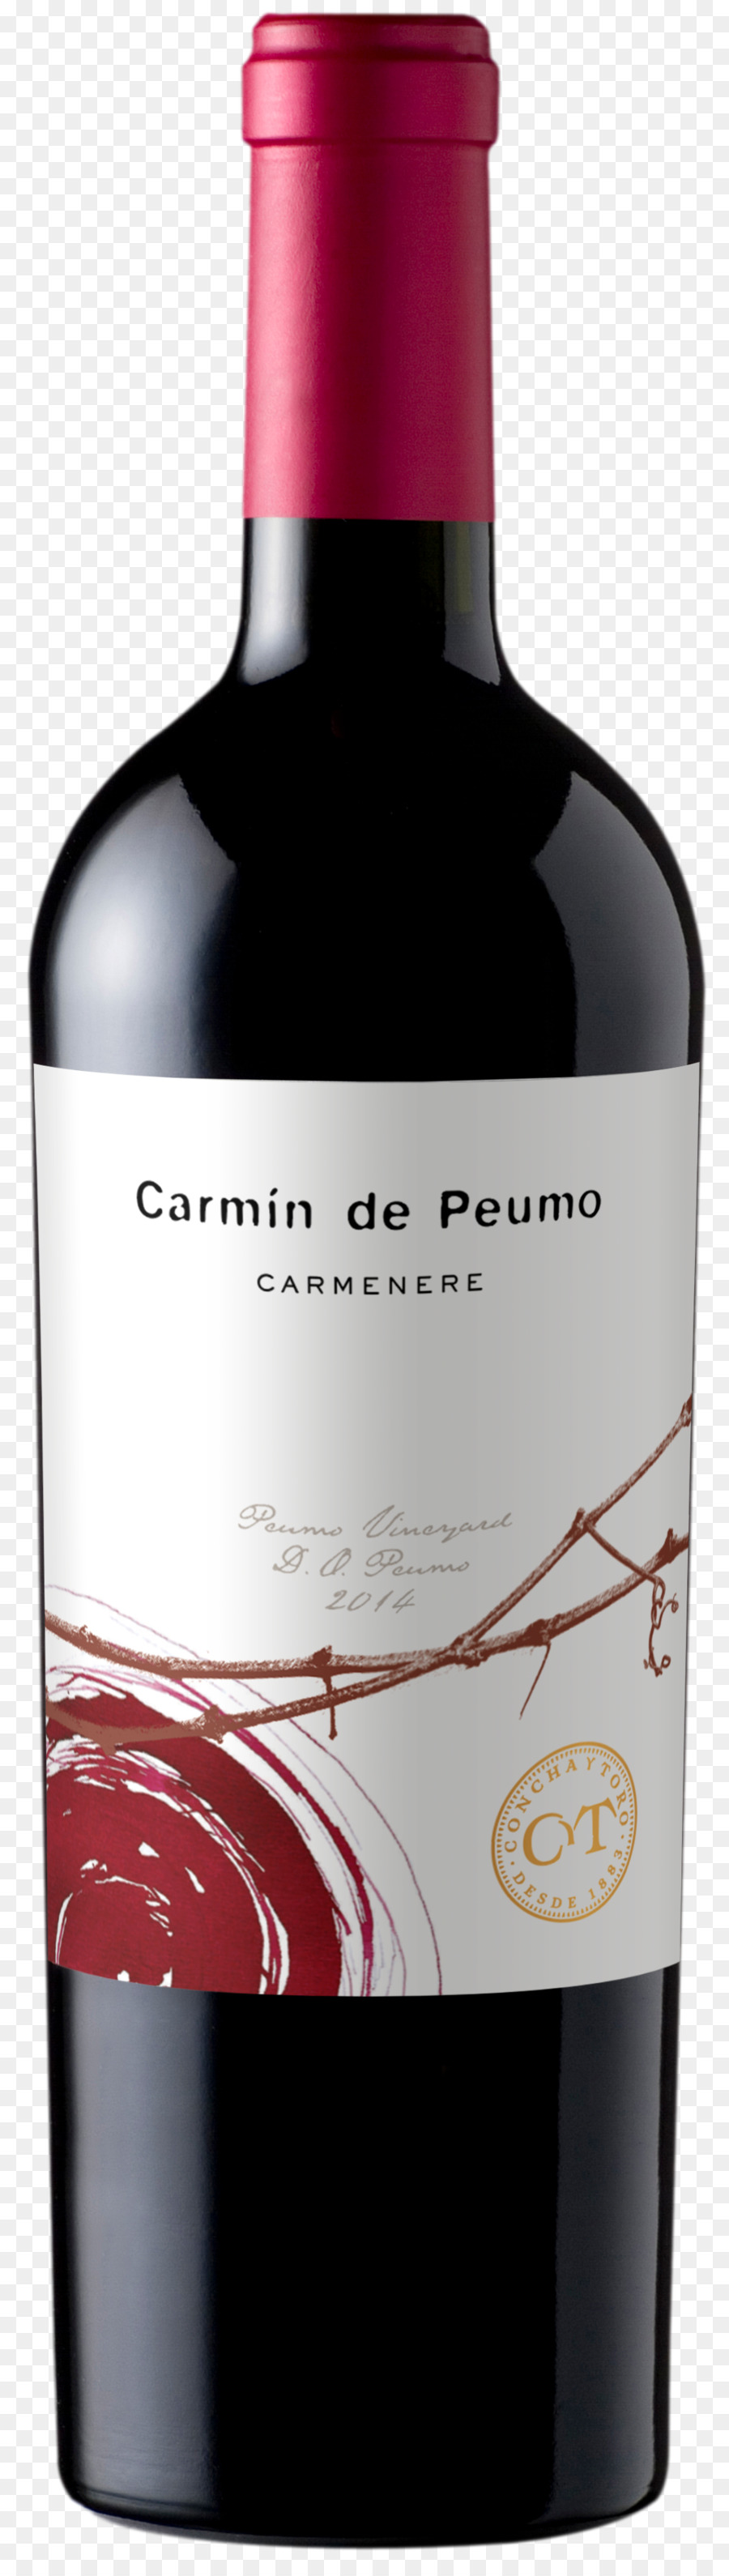 Carmenere Giống Rượu Vang Đỏ Peumo, Vina Phía Trong Vành Tai Y Toro - Rượu